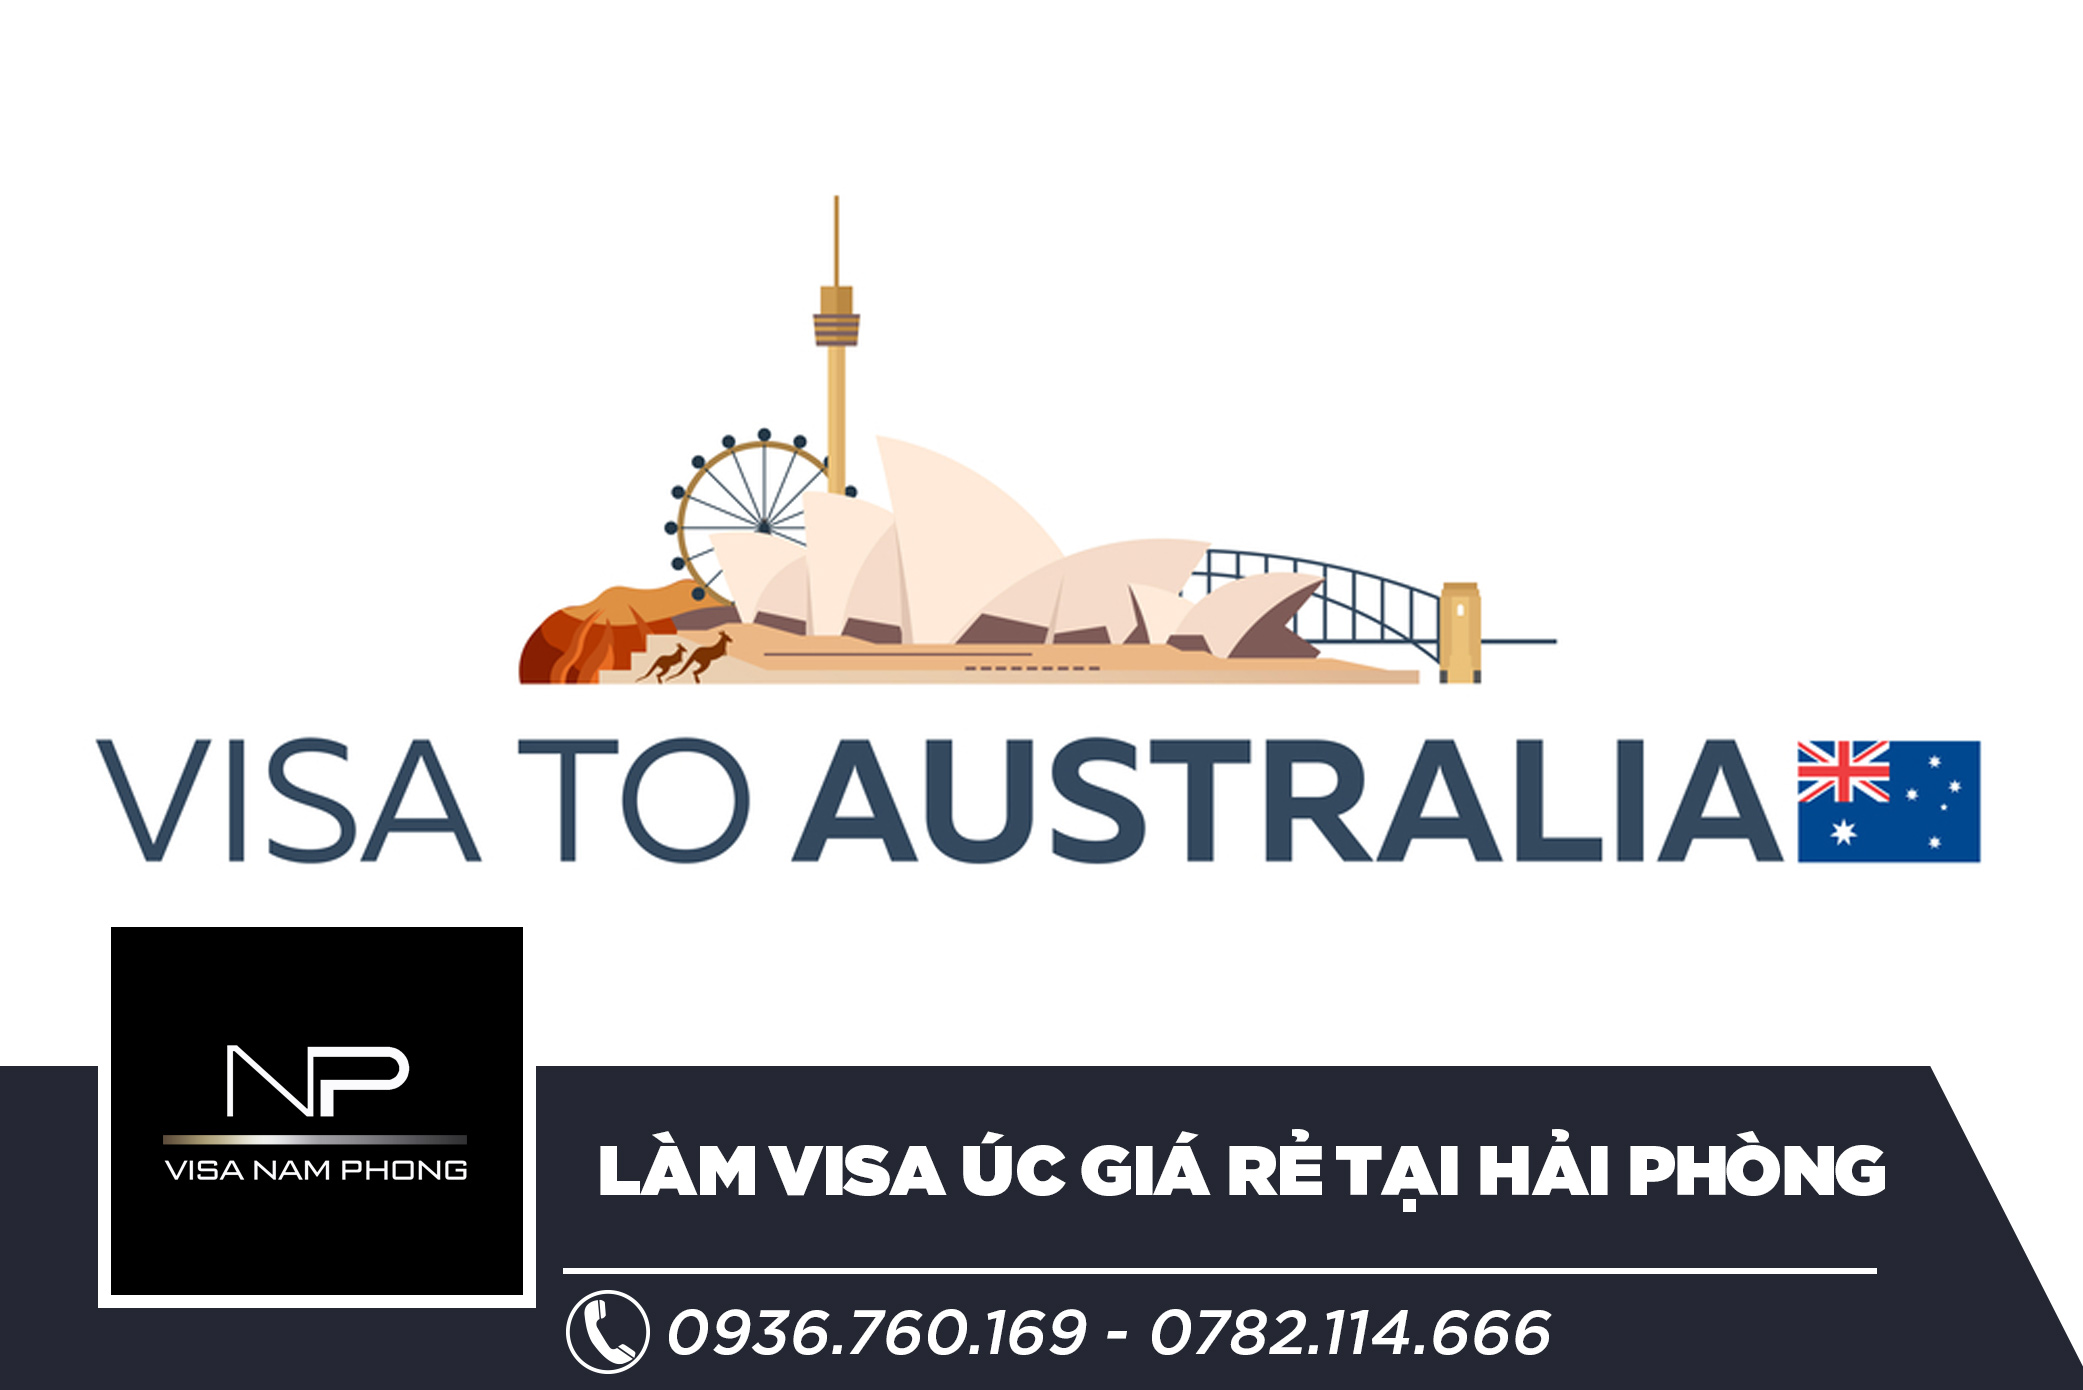 Làm visa Úc giá rẻ tại Hải Phòng